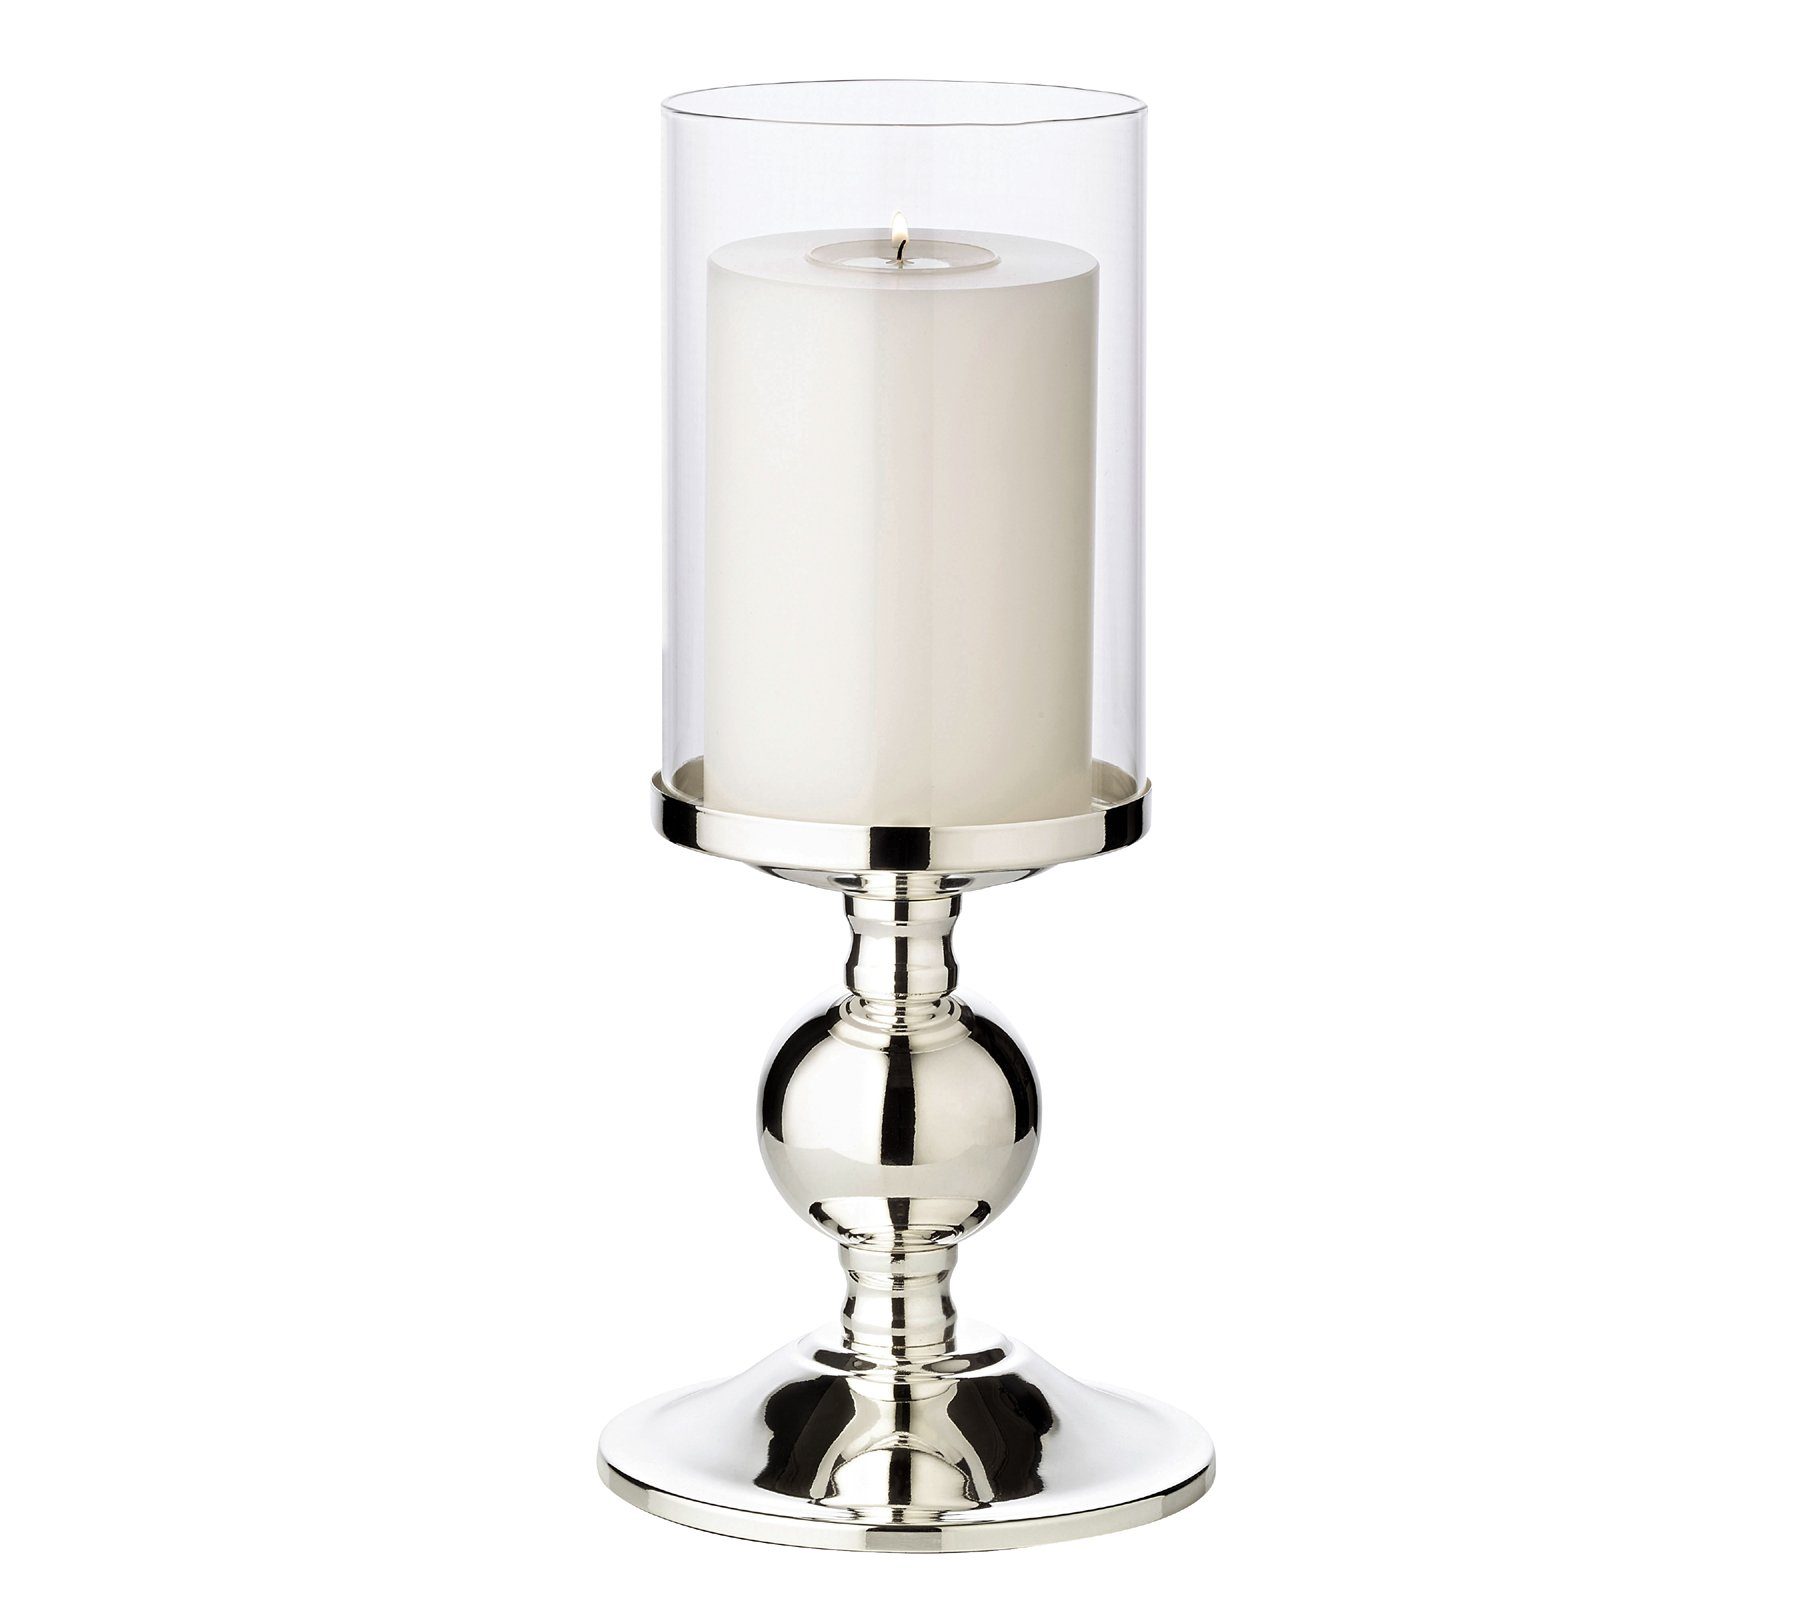 EDZARD Kerzenständer, Kerzenleuchter für Stumpenkerzen, Kerzenhalter mit  Glas-Aufsatz und Silber-Optik, versilbert und anlaufgeschützt, Höhe 29 cm  online kaufen | OTTO